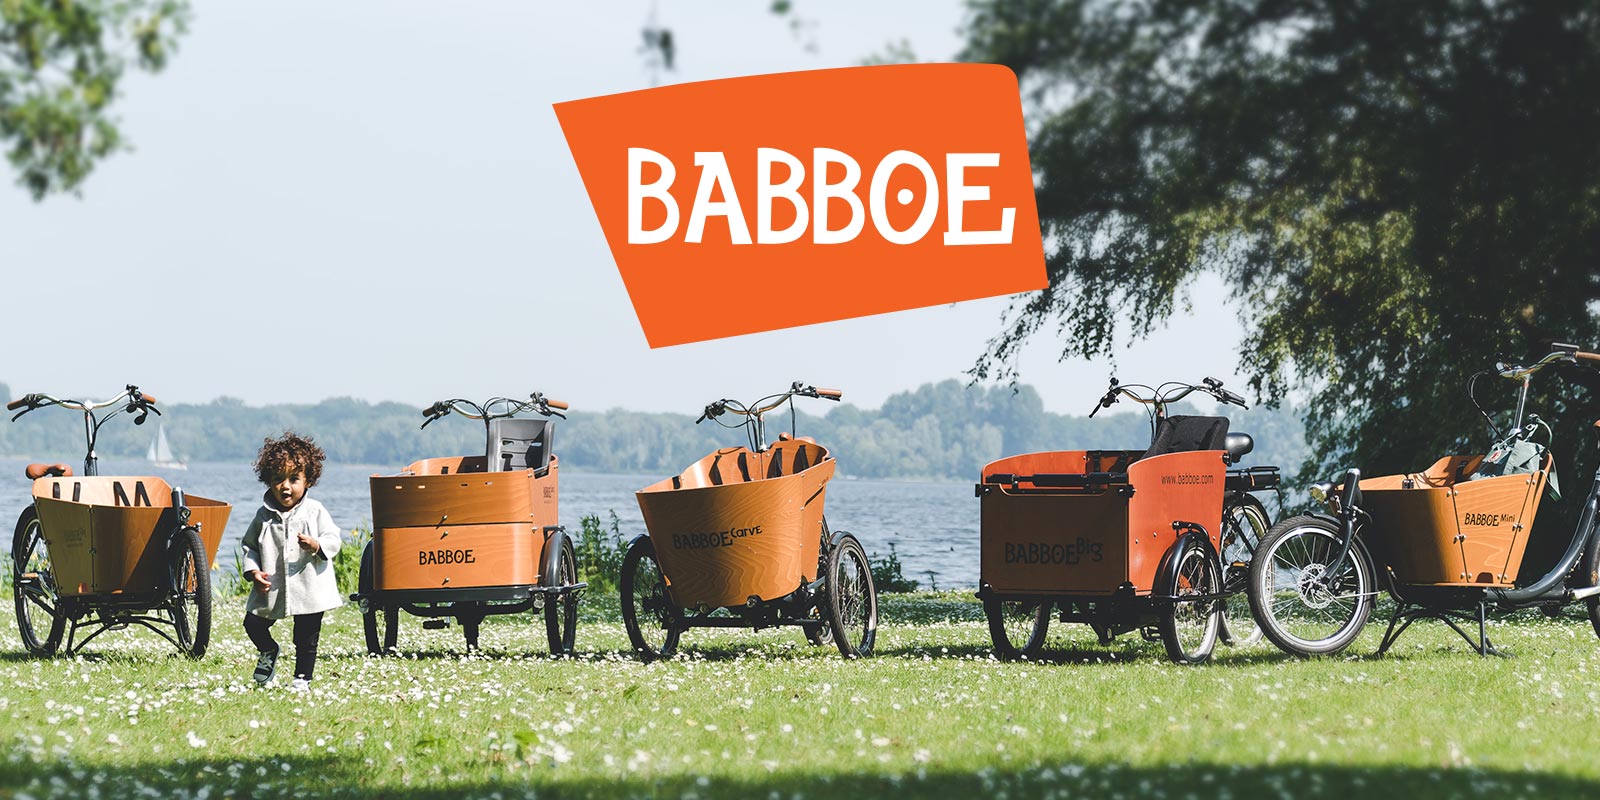 www.babboe.de